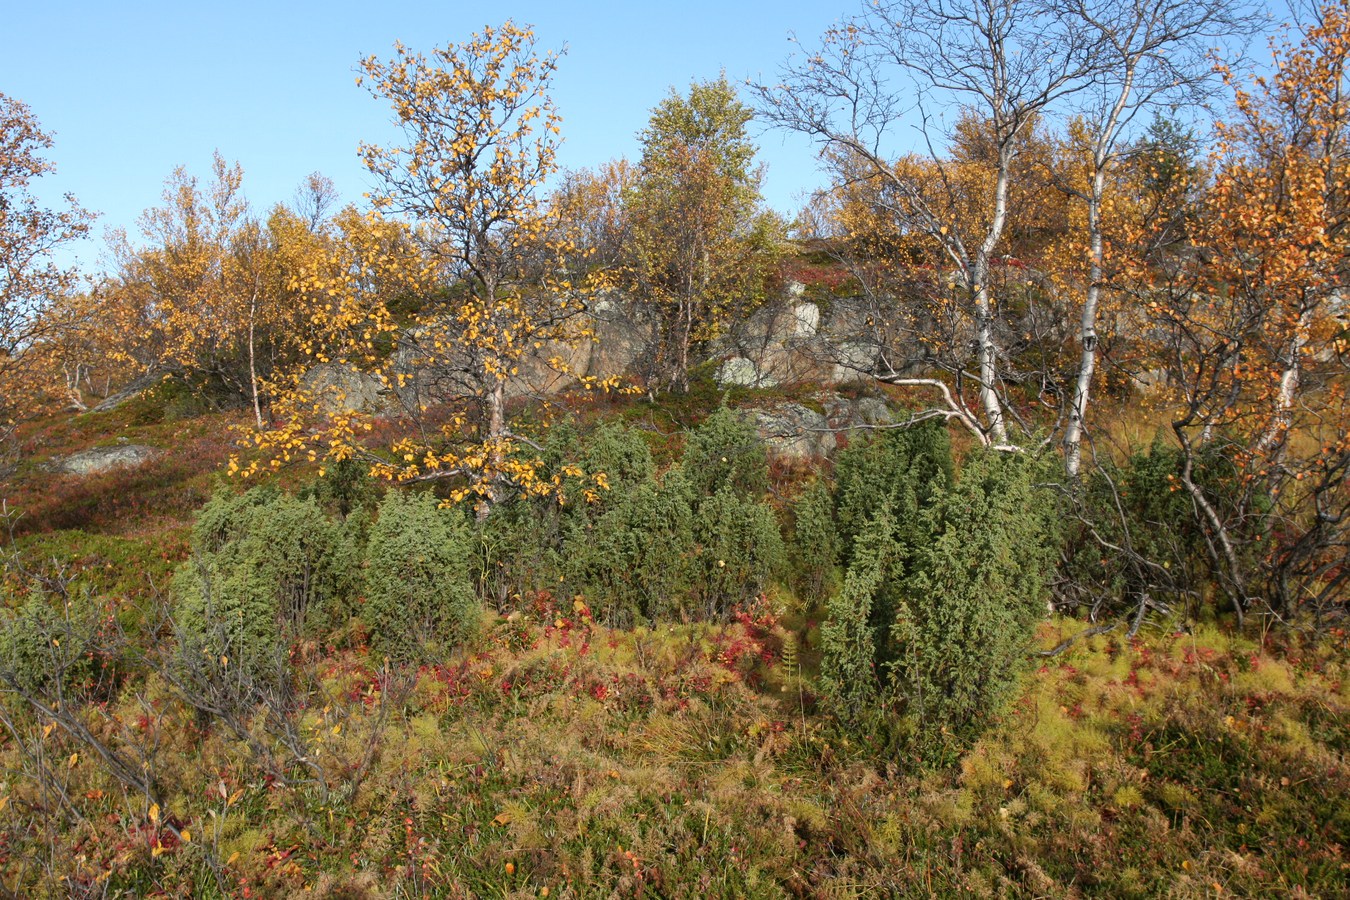 Image of Juniperus niemannii specimen.